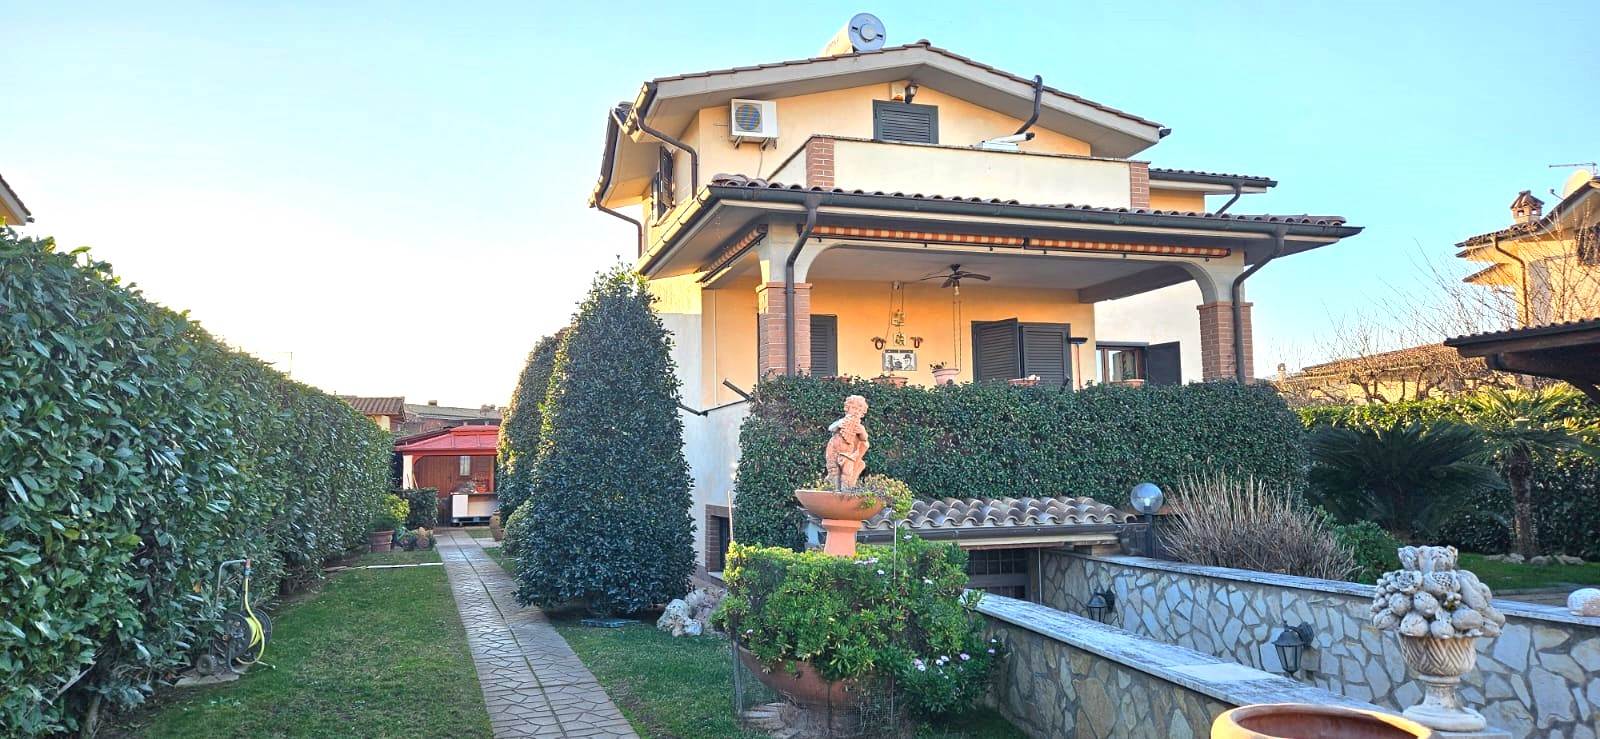 Villa in vendita a Fiano Romano, 6 locali, prezzo € 350.000 | PortaleAgenzieImmobiliari.it